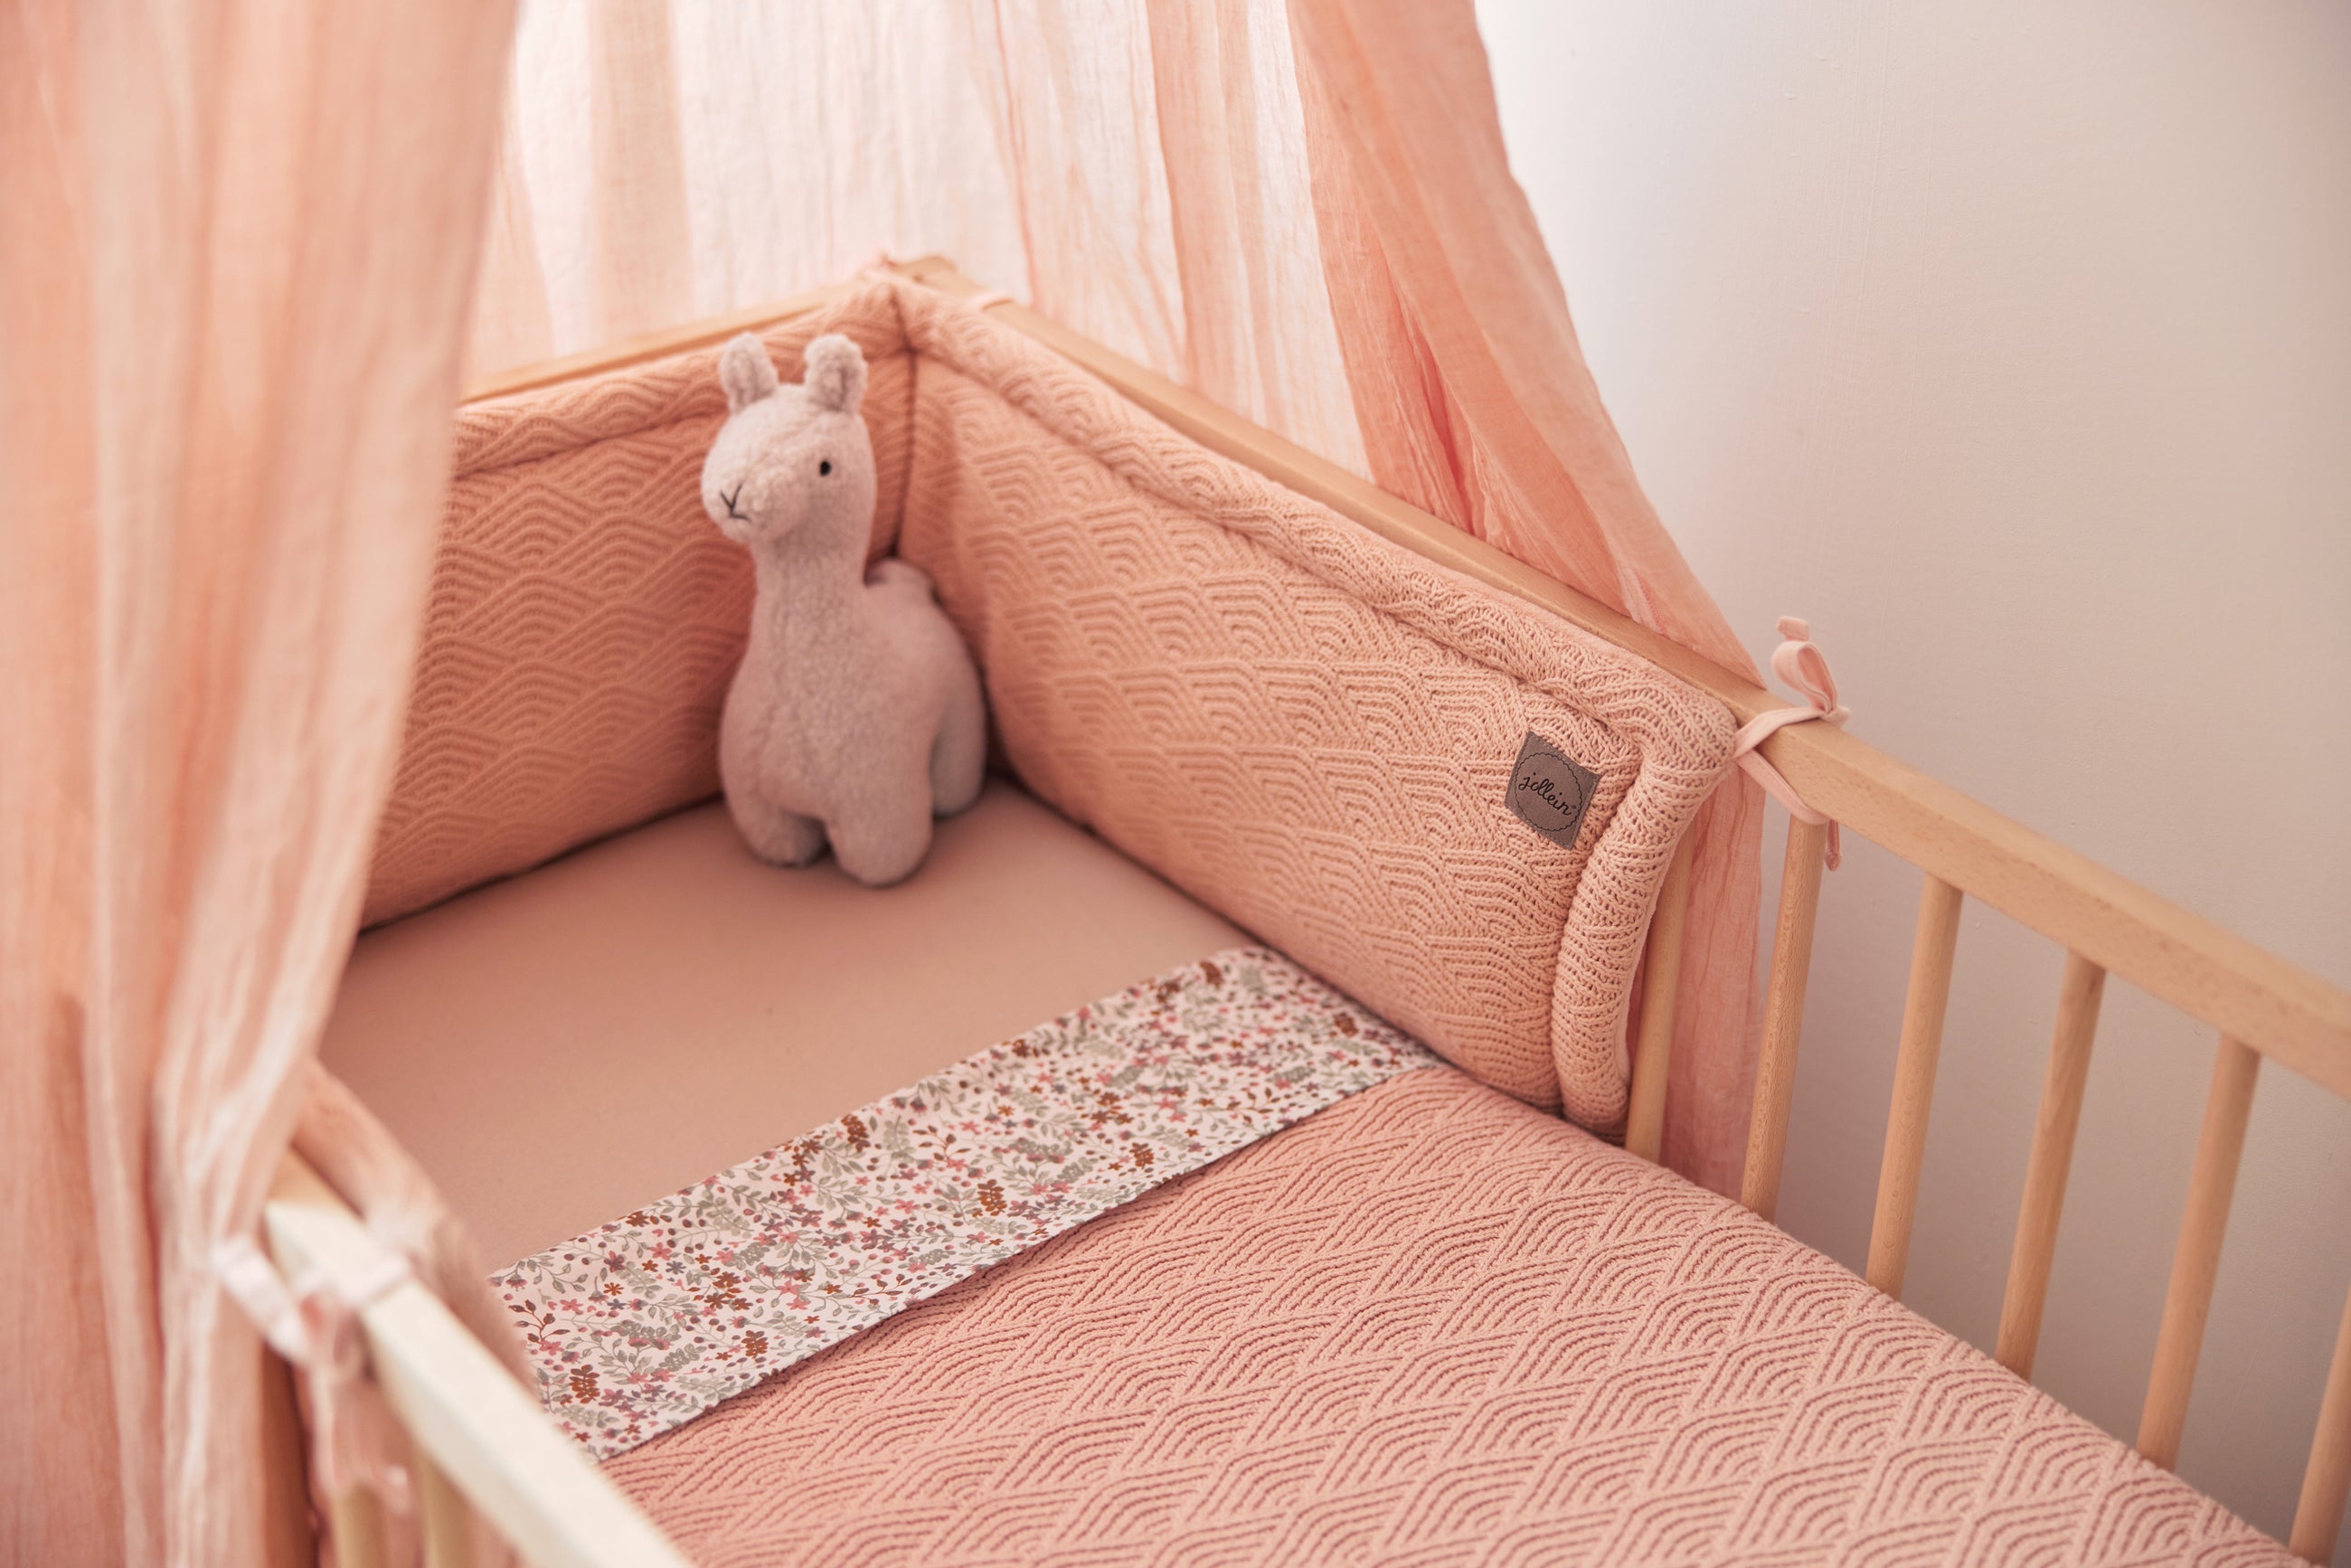 Découvrez notre collection de tour de lit pour le berceau de bébé sur Babykare.fr